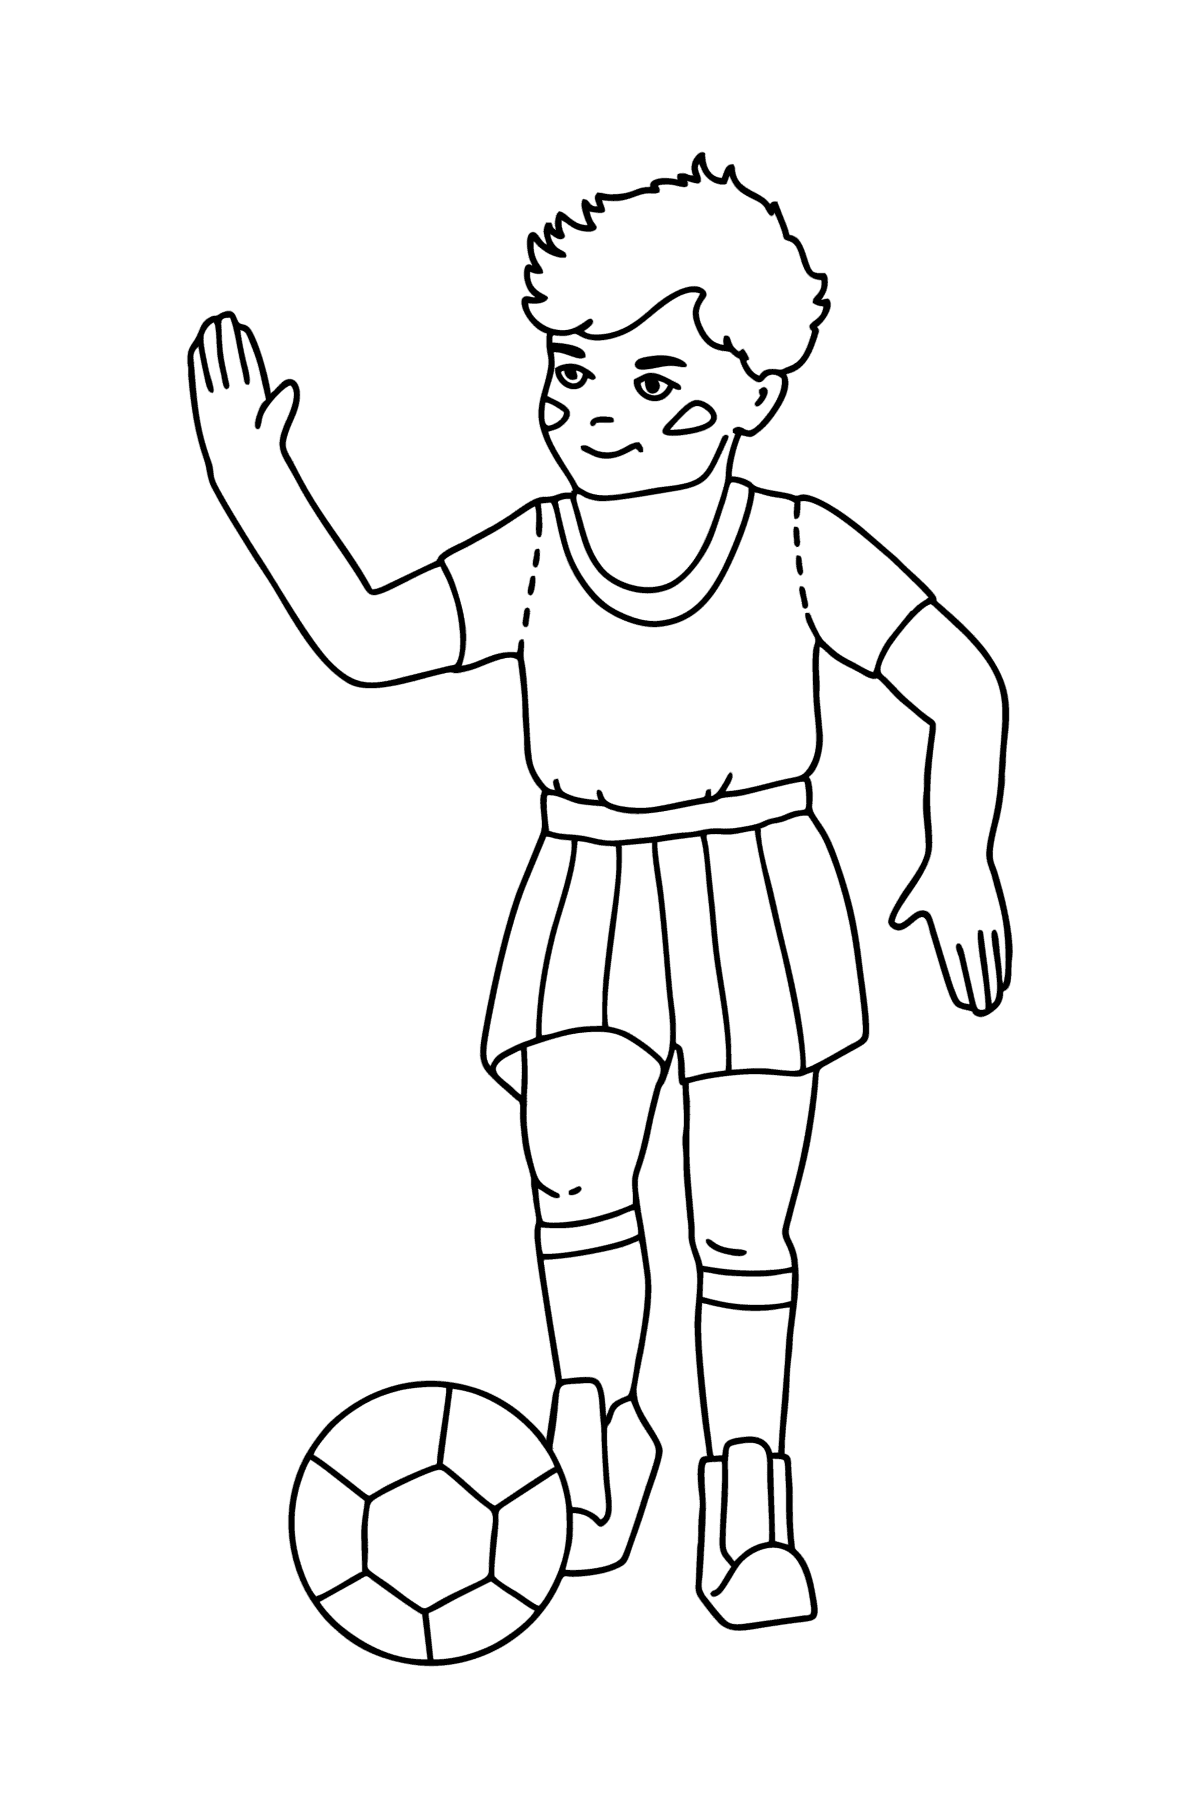 Tegning til fargelegging Guttefotballspiller - Tegninger til fargelegging for barn